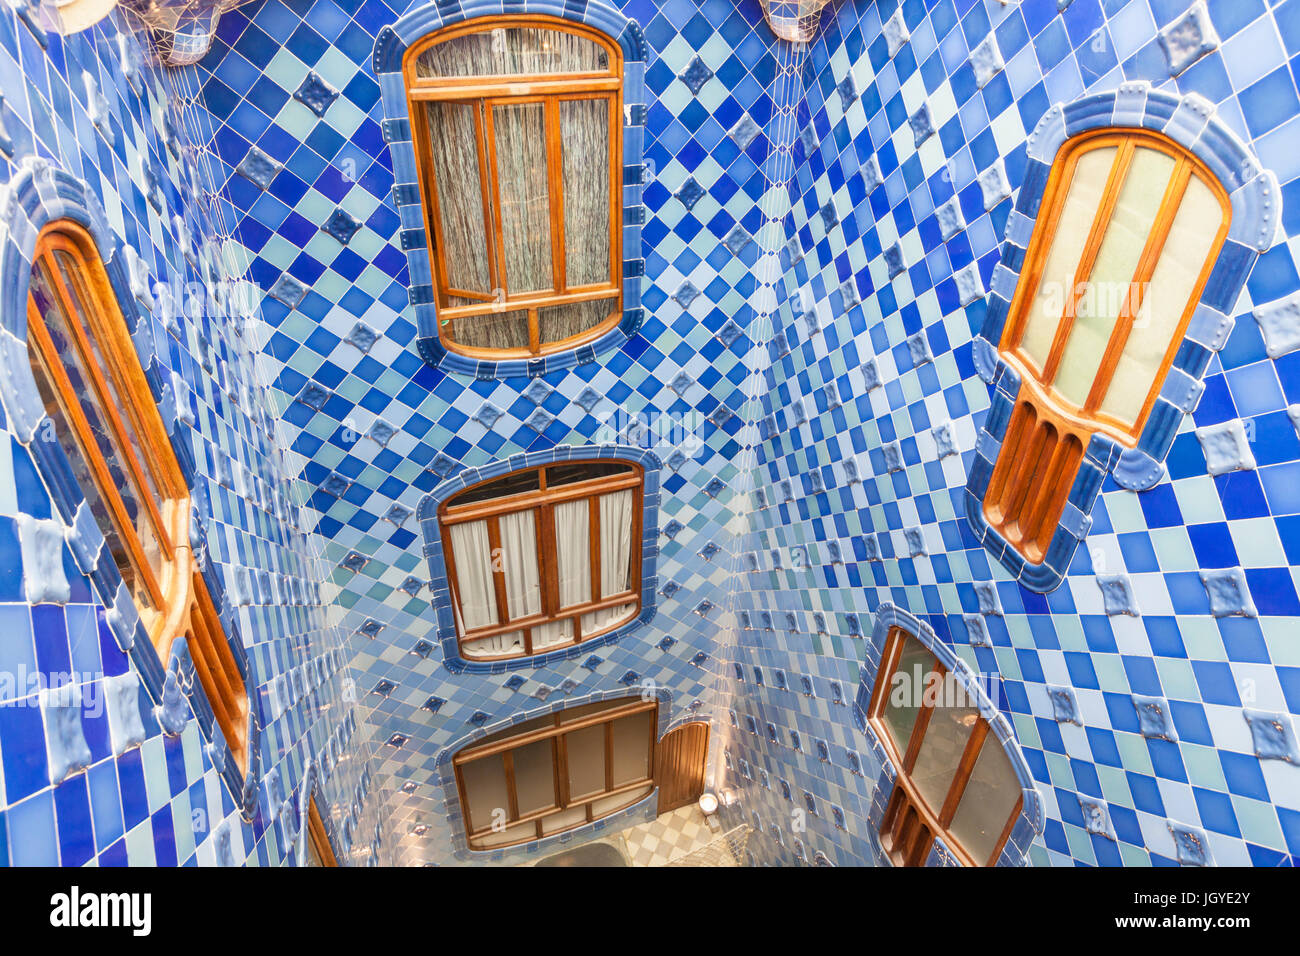 Catalunya Barcelone Vue sur le carrelage bleu et blanc lampe centrale bien de Casa Batllo conçu par l'architecte Antoni Gaudi espagne eu Europe Catalogne Banque D'Images